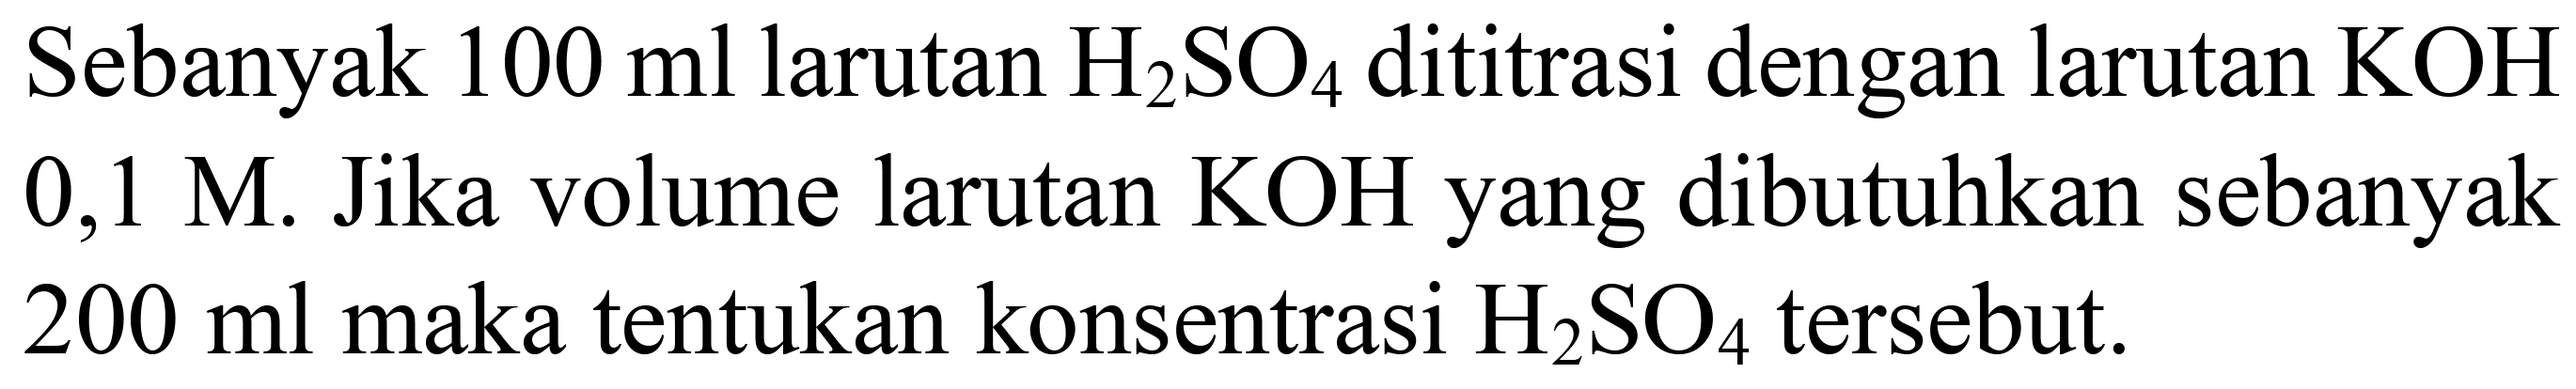 Sebanyak 100 ml larutan H2SO4 dititrasi dengan larutan KOH 0,1 M. Jika volume larutan KOH yang dibutuhkan sebanyak 200 ml maka tentukan konsentrasi H2SO4 tersebut.